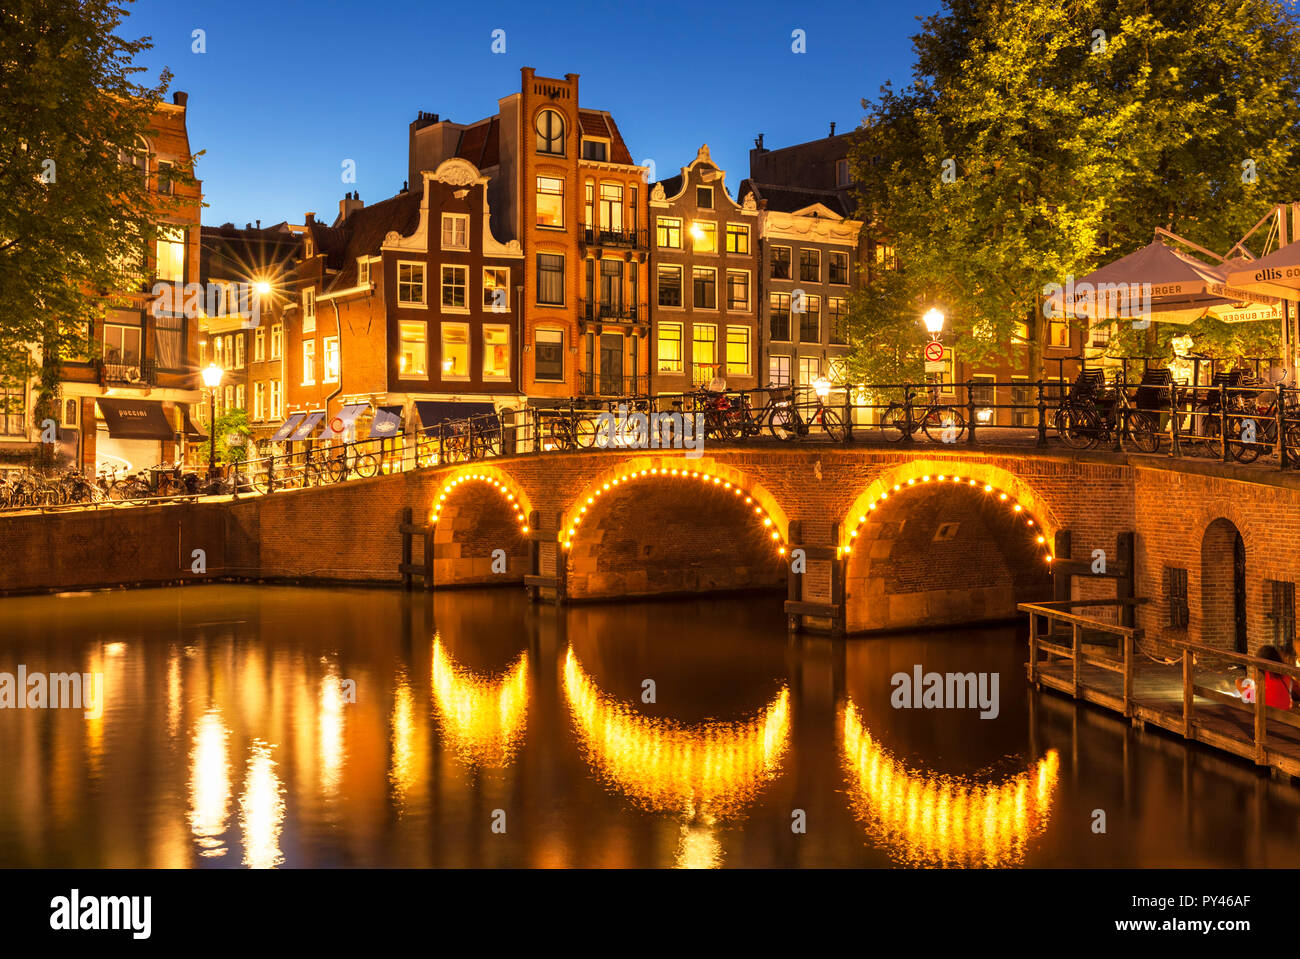 Amsterdam canal lumineux pont sur le Canal Singel, Torensluis canal Amsterdam Amsterdam Hollande Pays-bas le pont de l'Europe de l'UE Banque D'Images